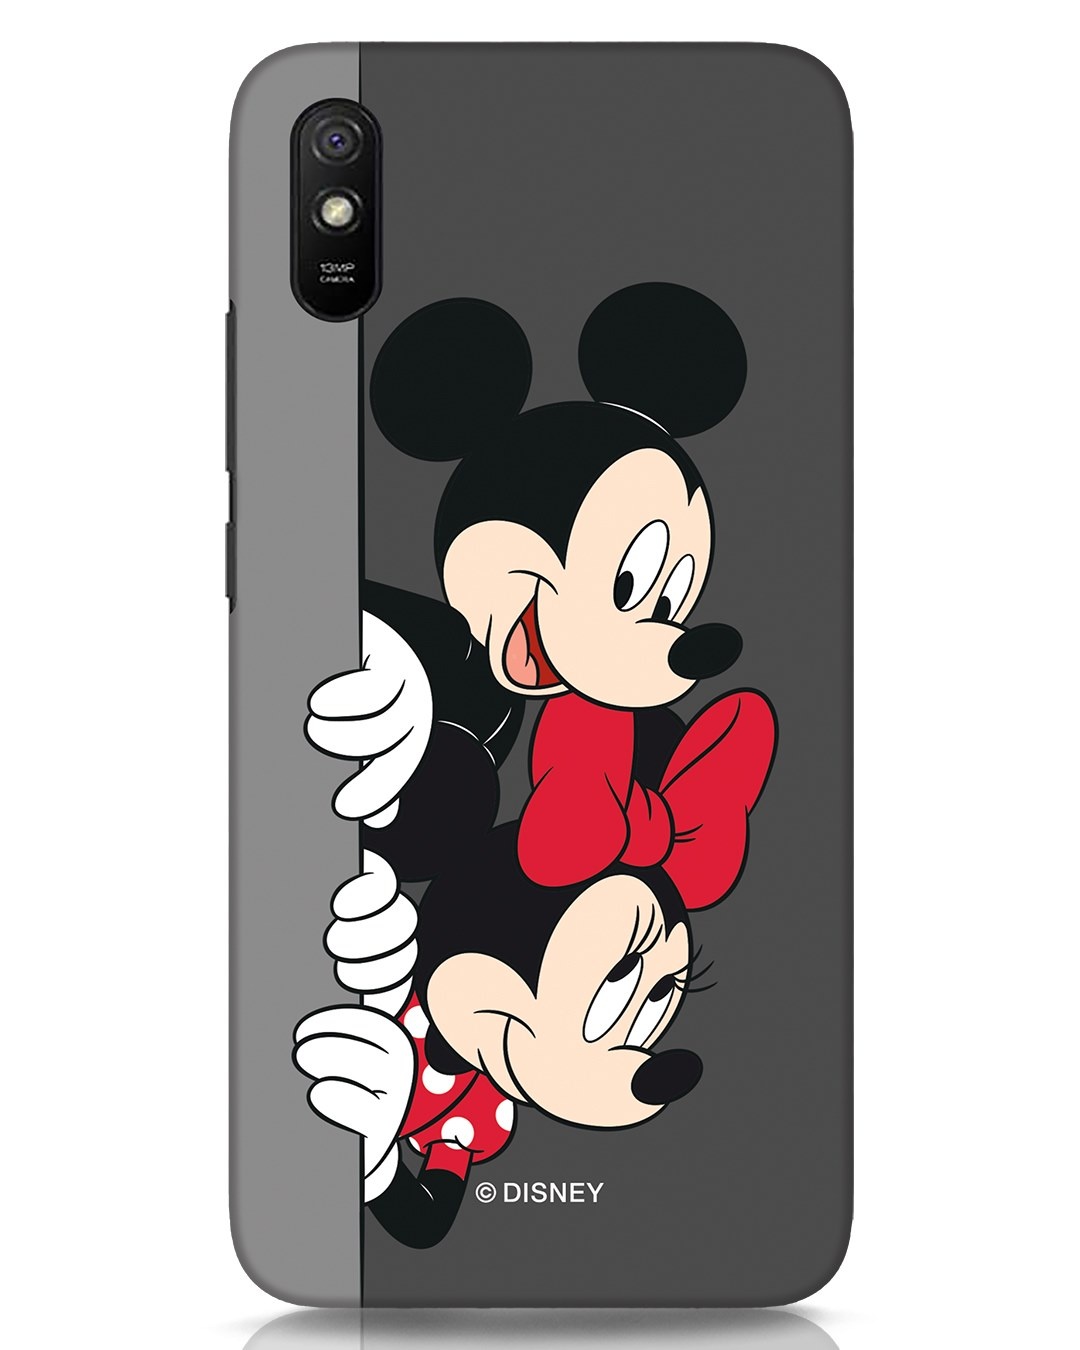 Carcasas Mickey Mouse Redmi 9A